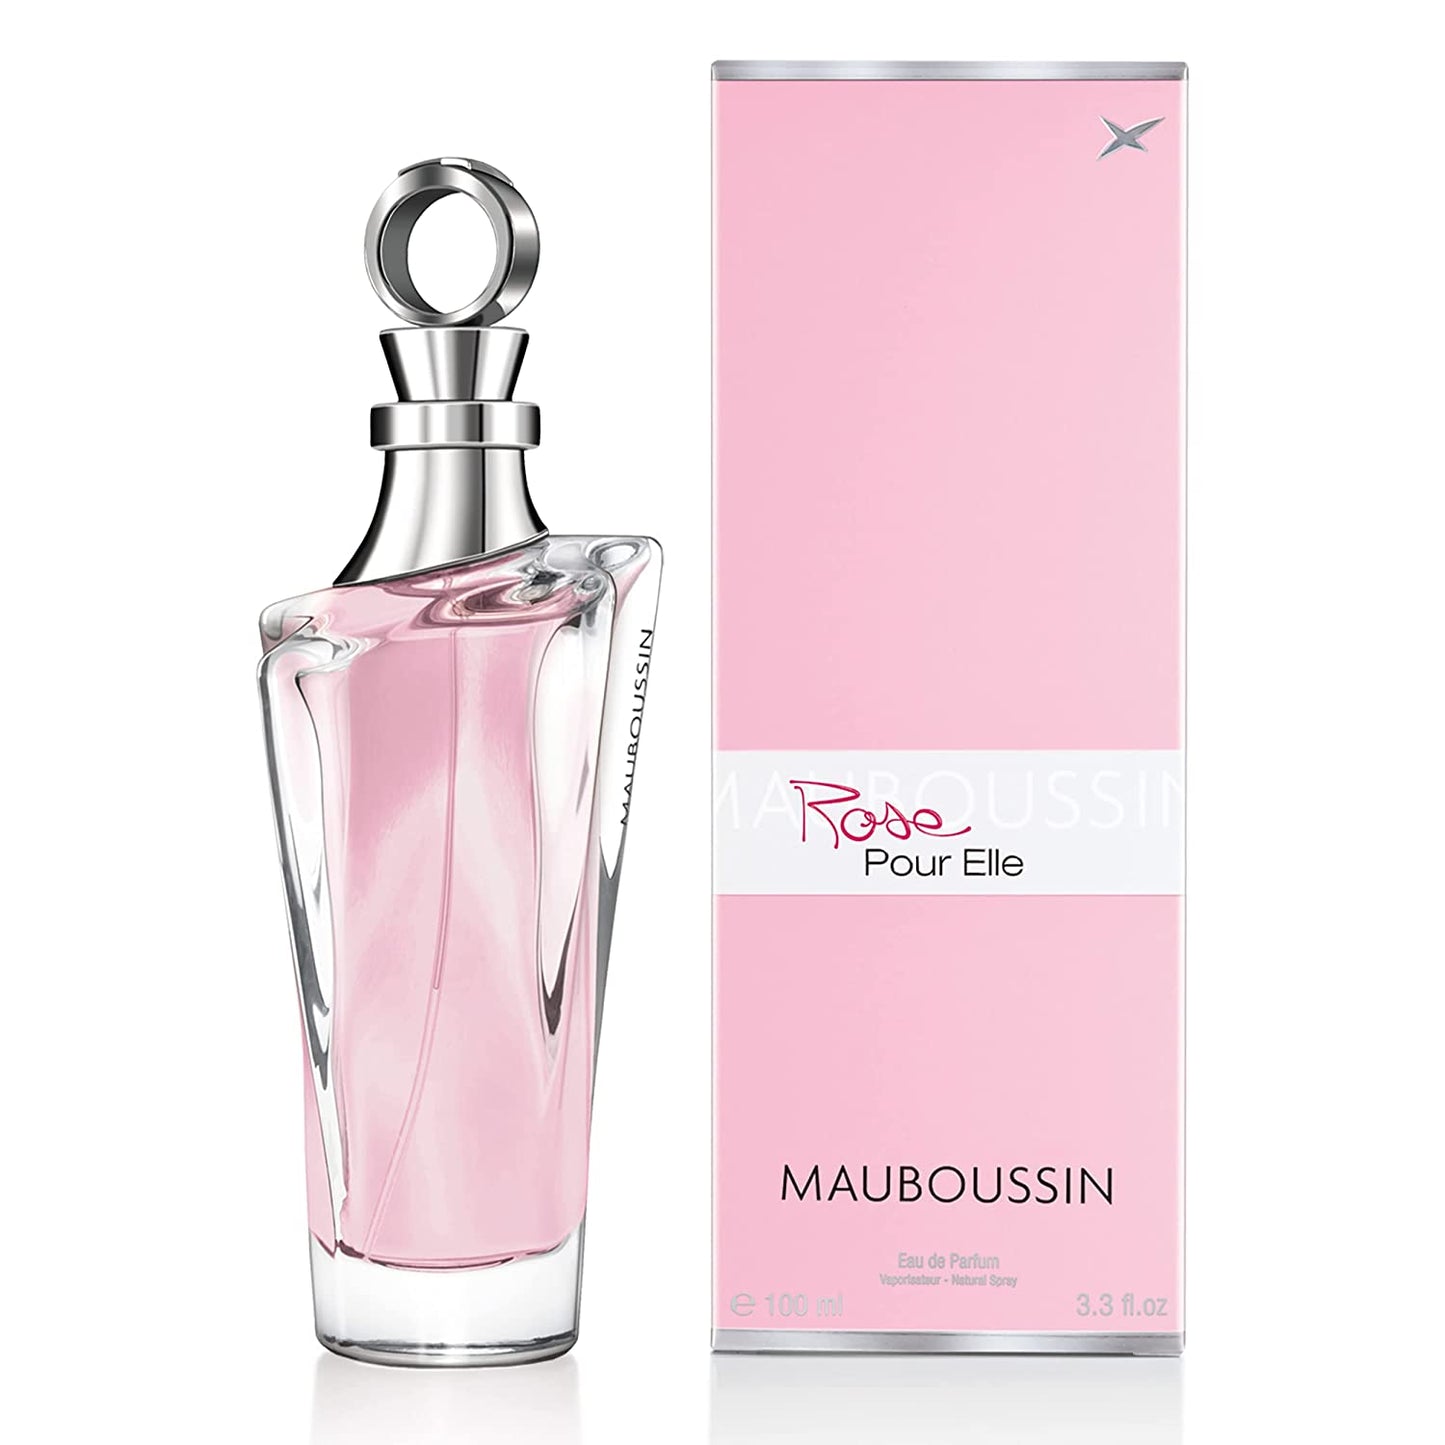 Mauboussin - Rose Pour Elle 100ml (3.3 Fl Oz) - Eau de Parfum for Women - Floral, Fruity & Fresh Scents